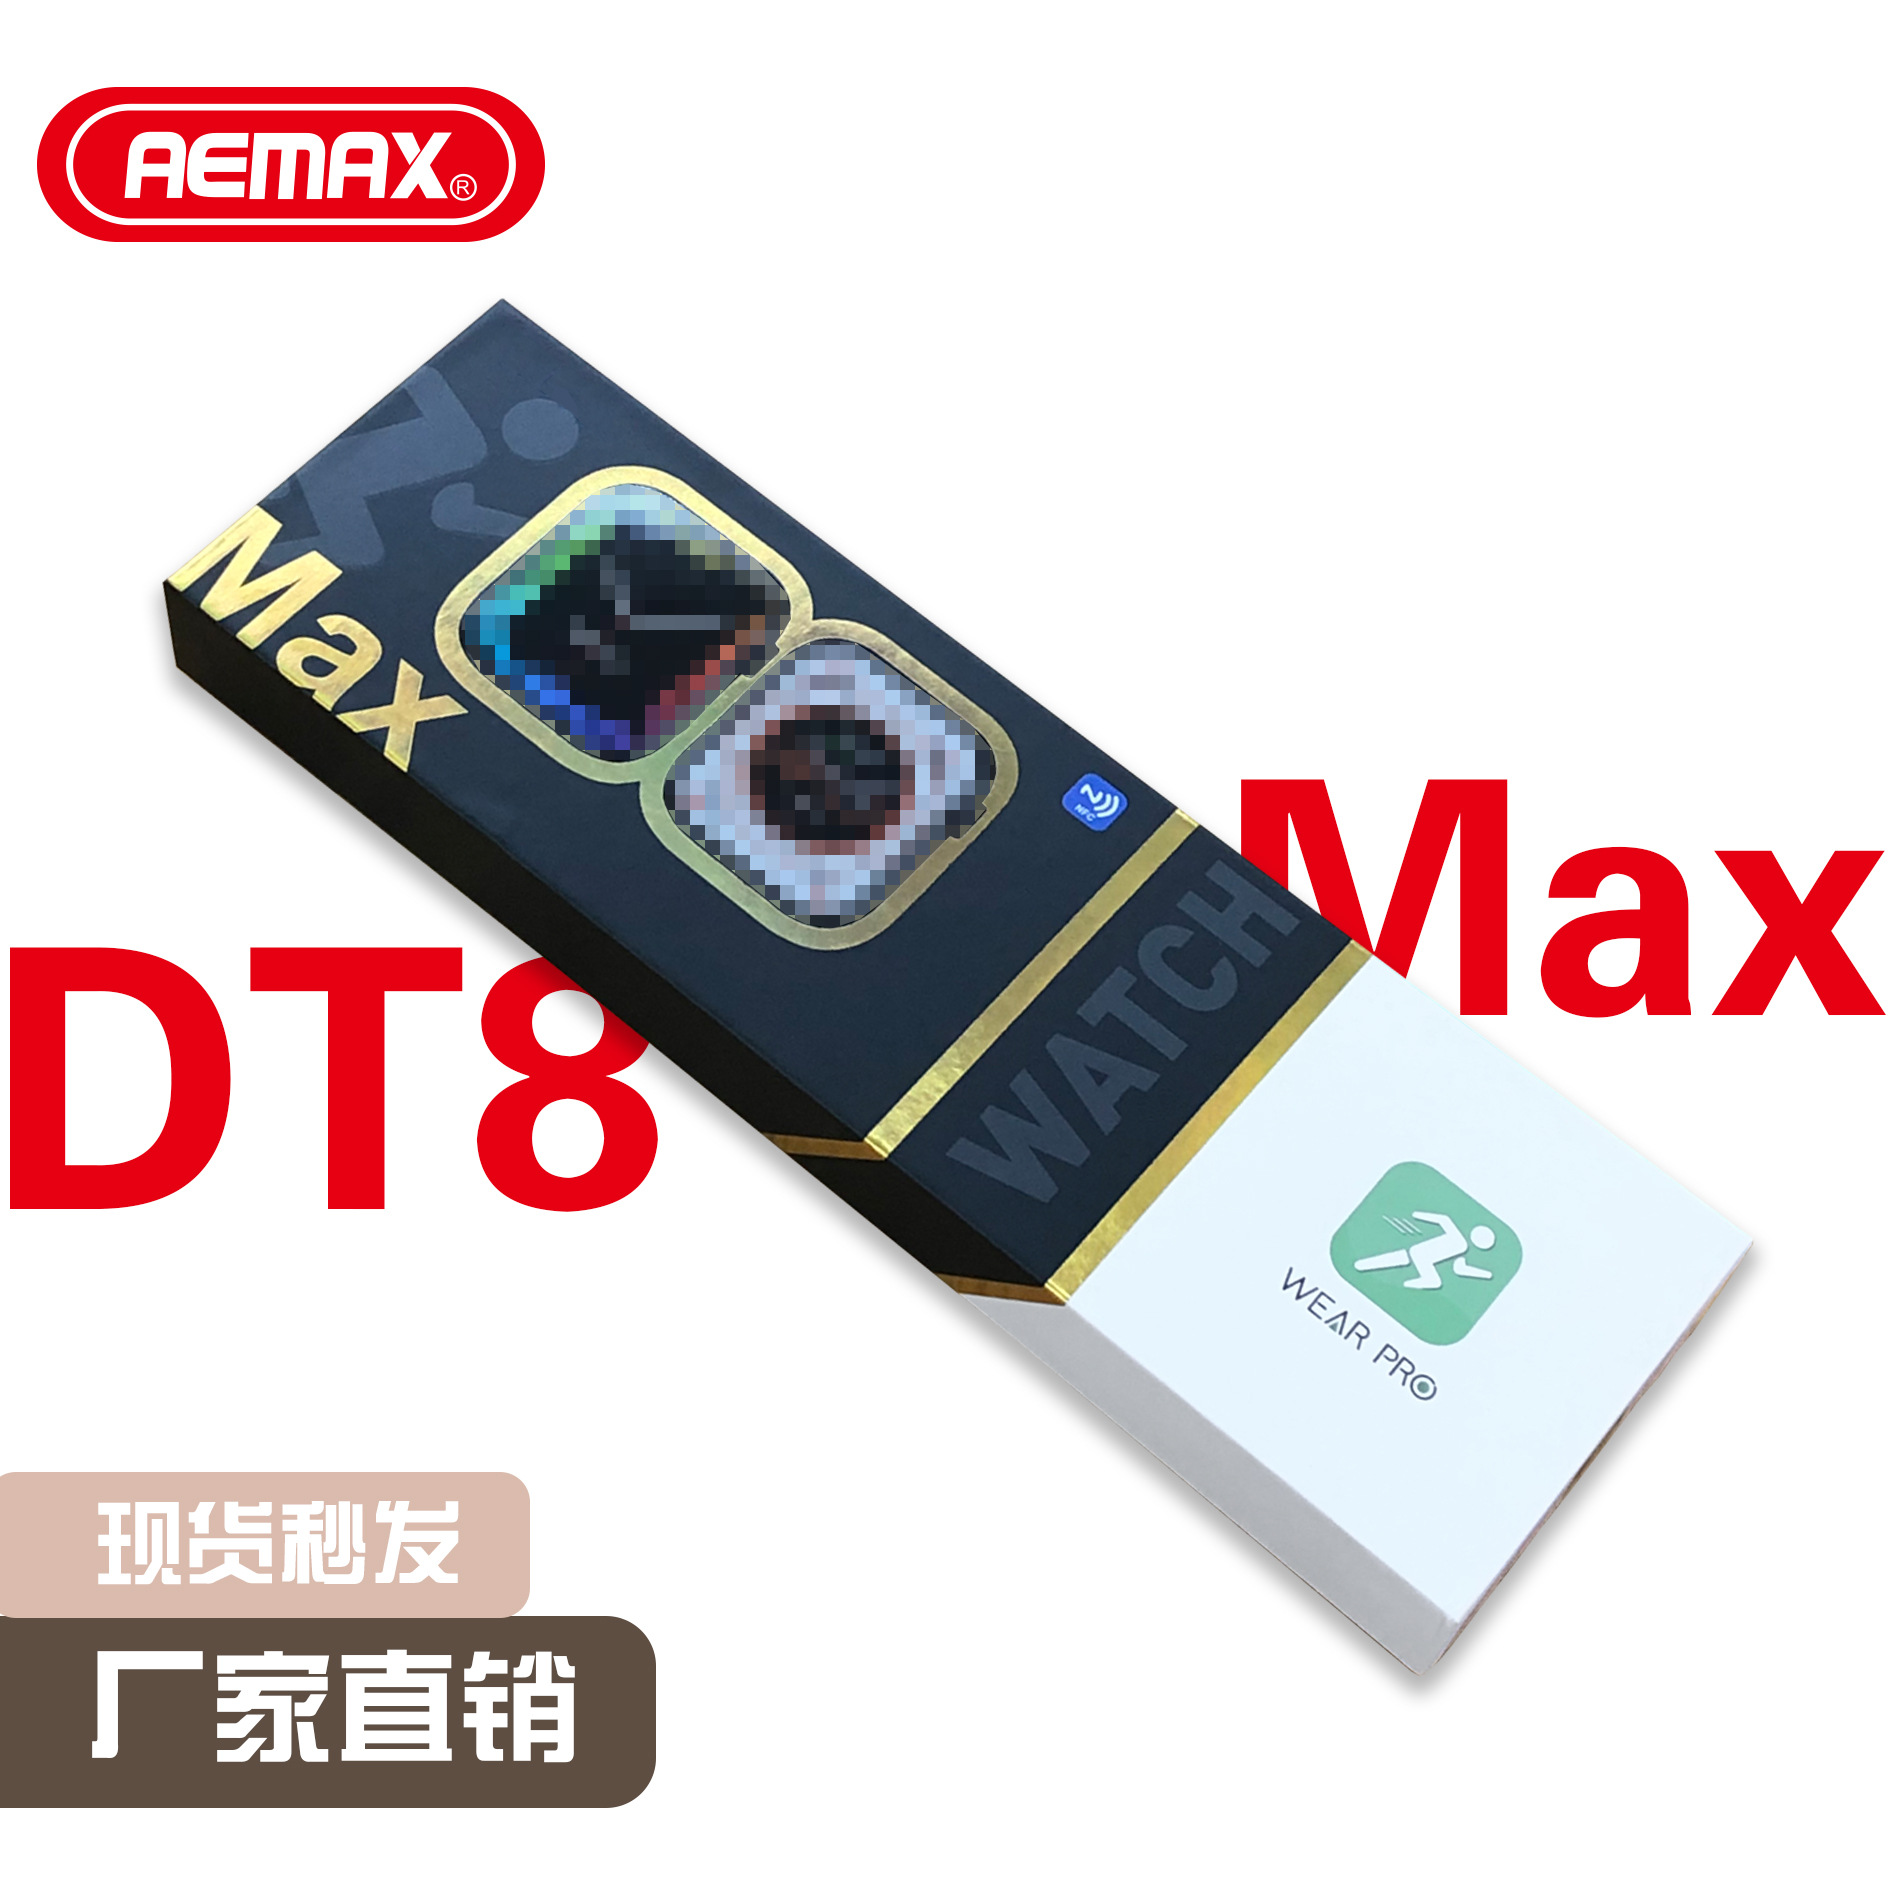 S8 华强北新款DT8 MAX智能手表 顶配2.0屏蓝牙通话离线支付手表